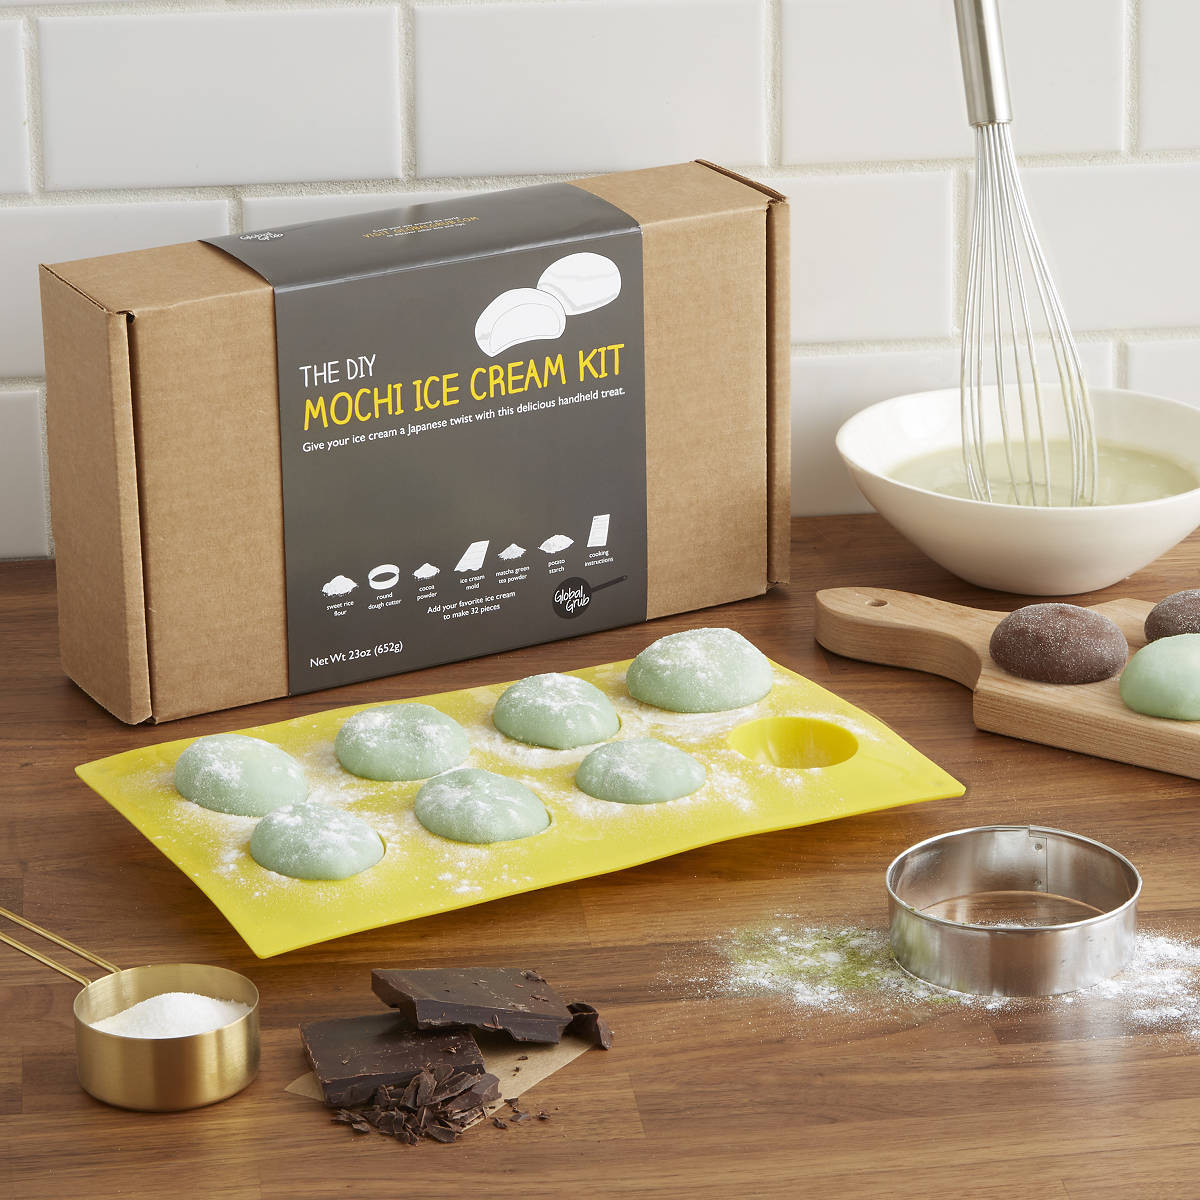 DIY Food Kits
 DIY Mochi Ice Cream Kit